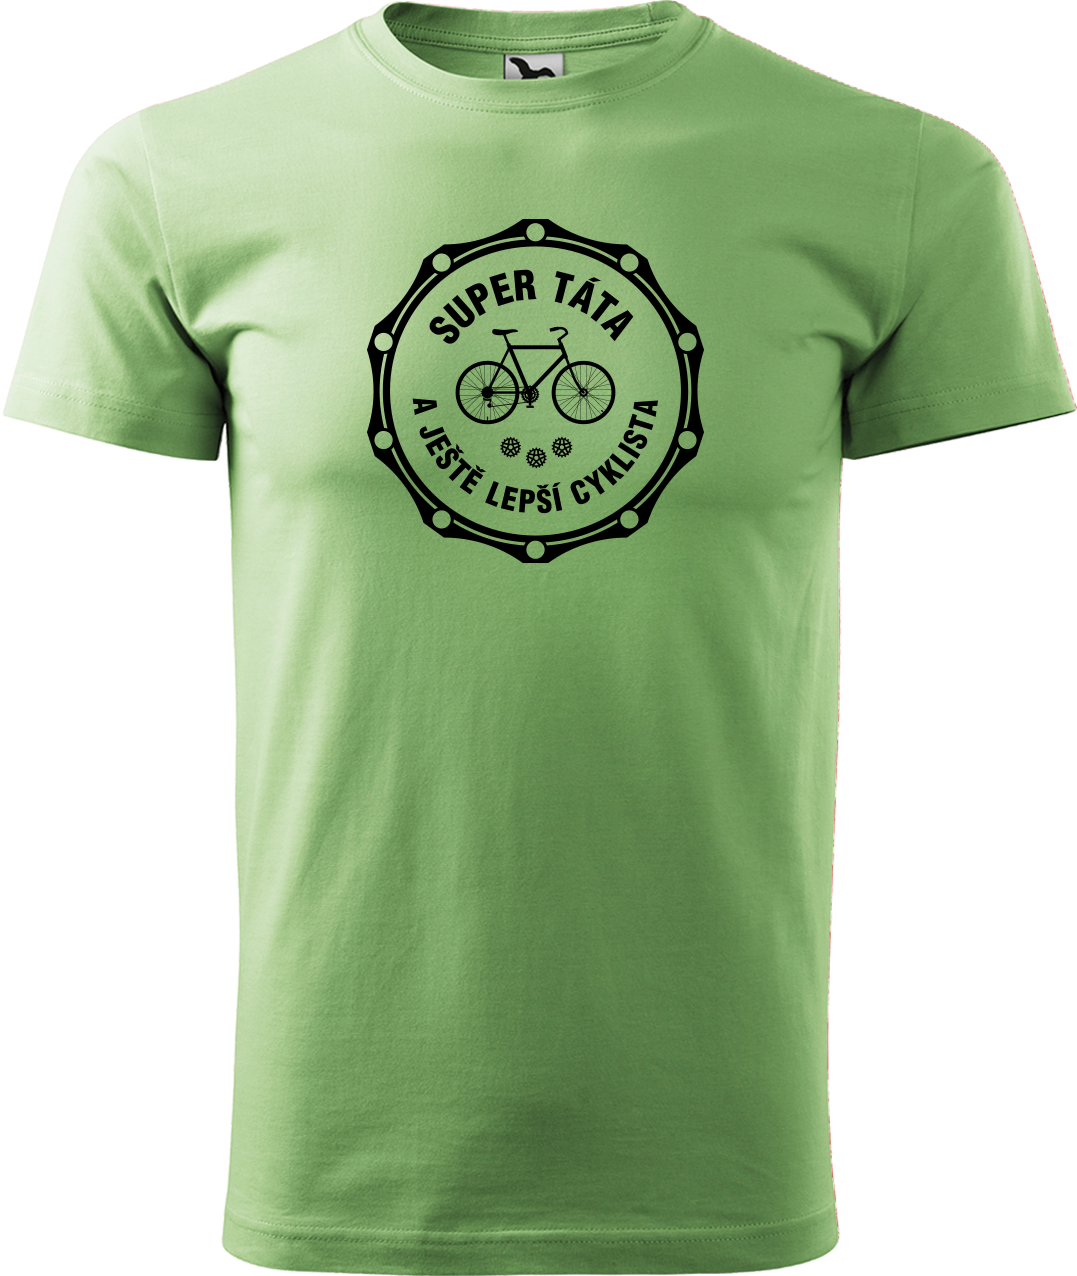 Pánské tričko pro cyklistu - Super táta a ještě lepší cyklista Velikost: M, Barva: Trávově zelená (39)